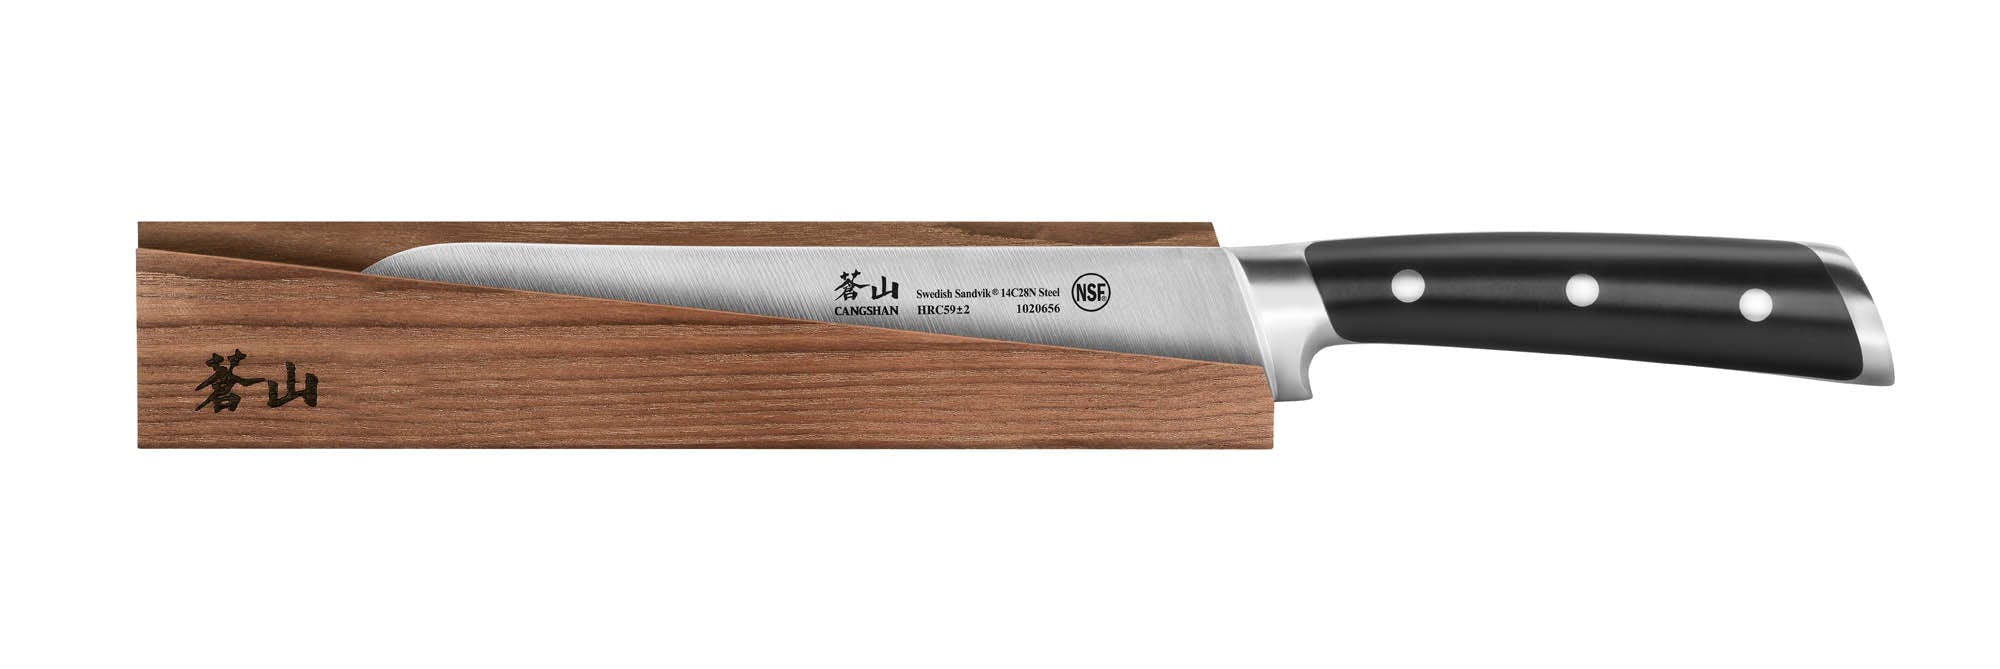 Cangshan TS Series Bread Knife, 10.25"